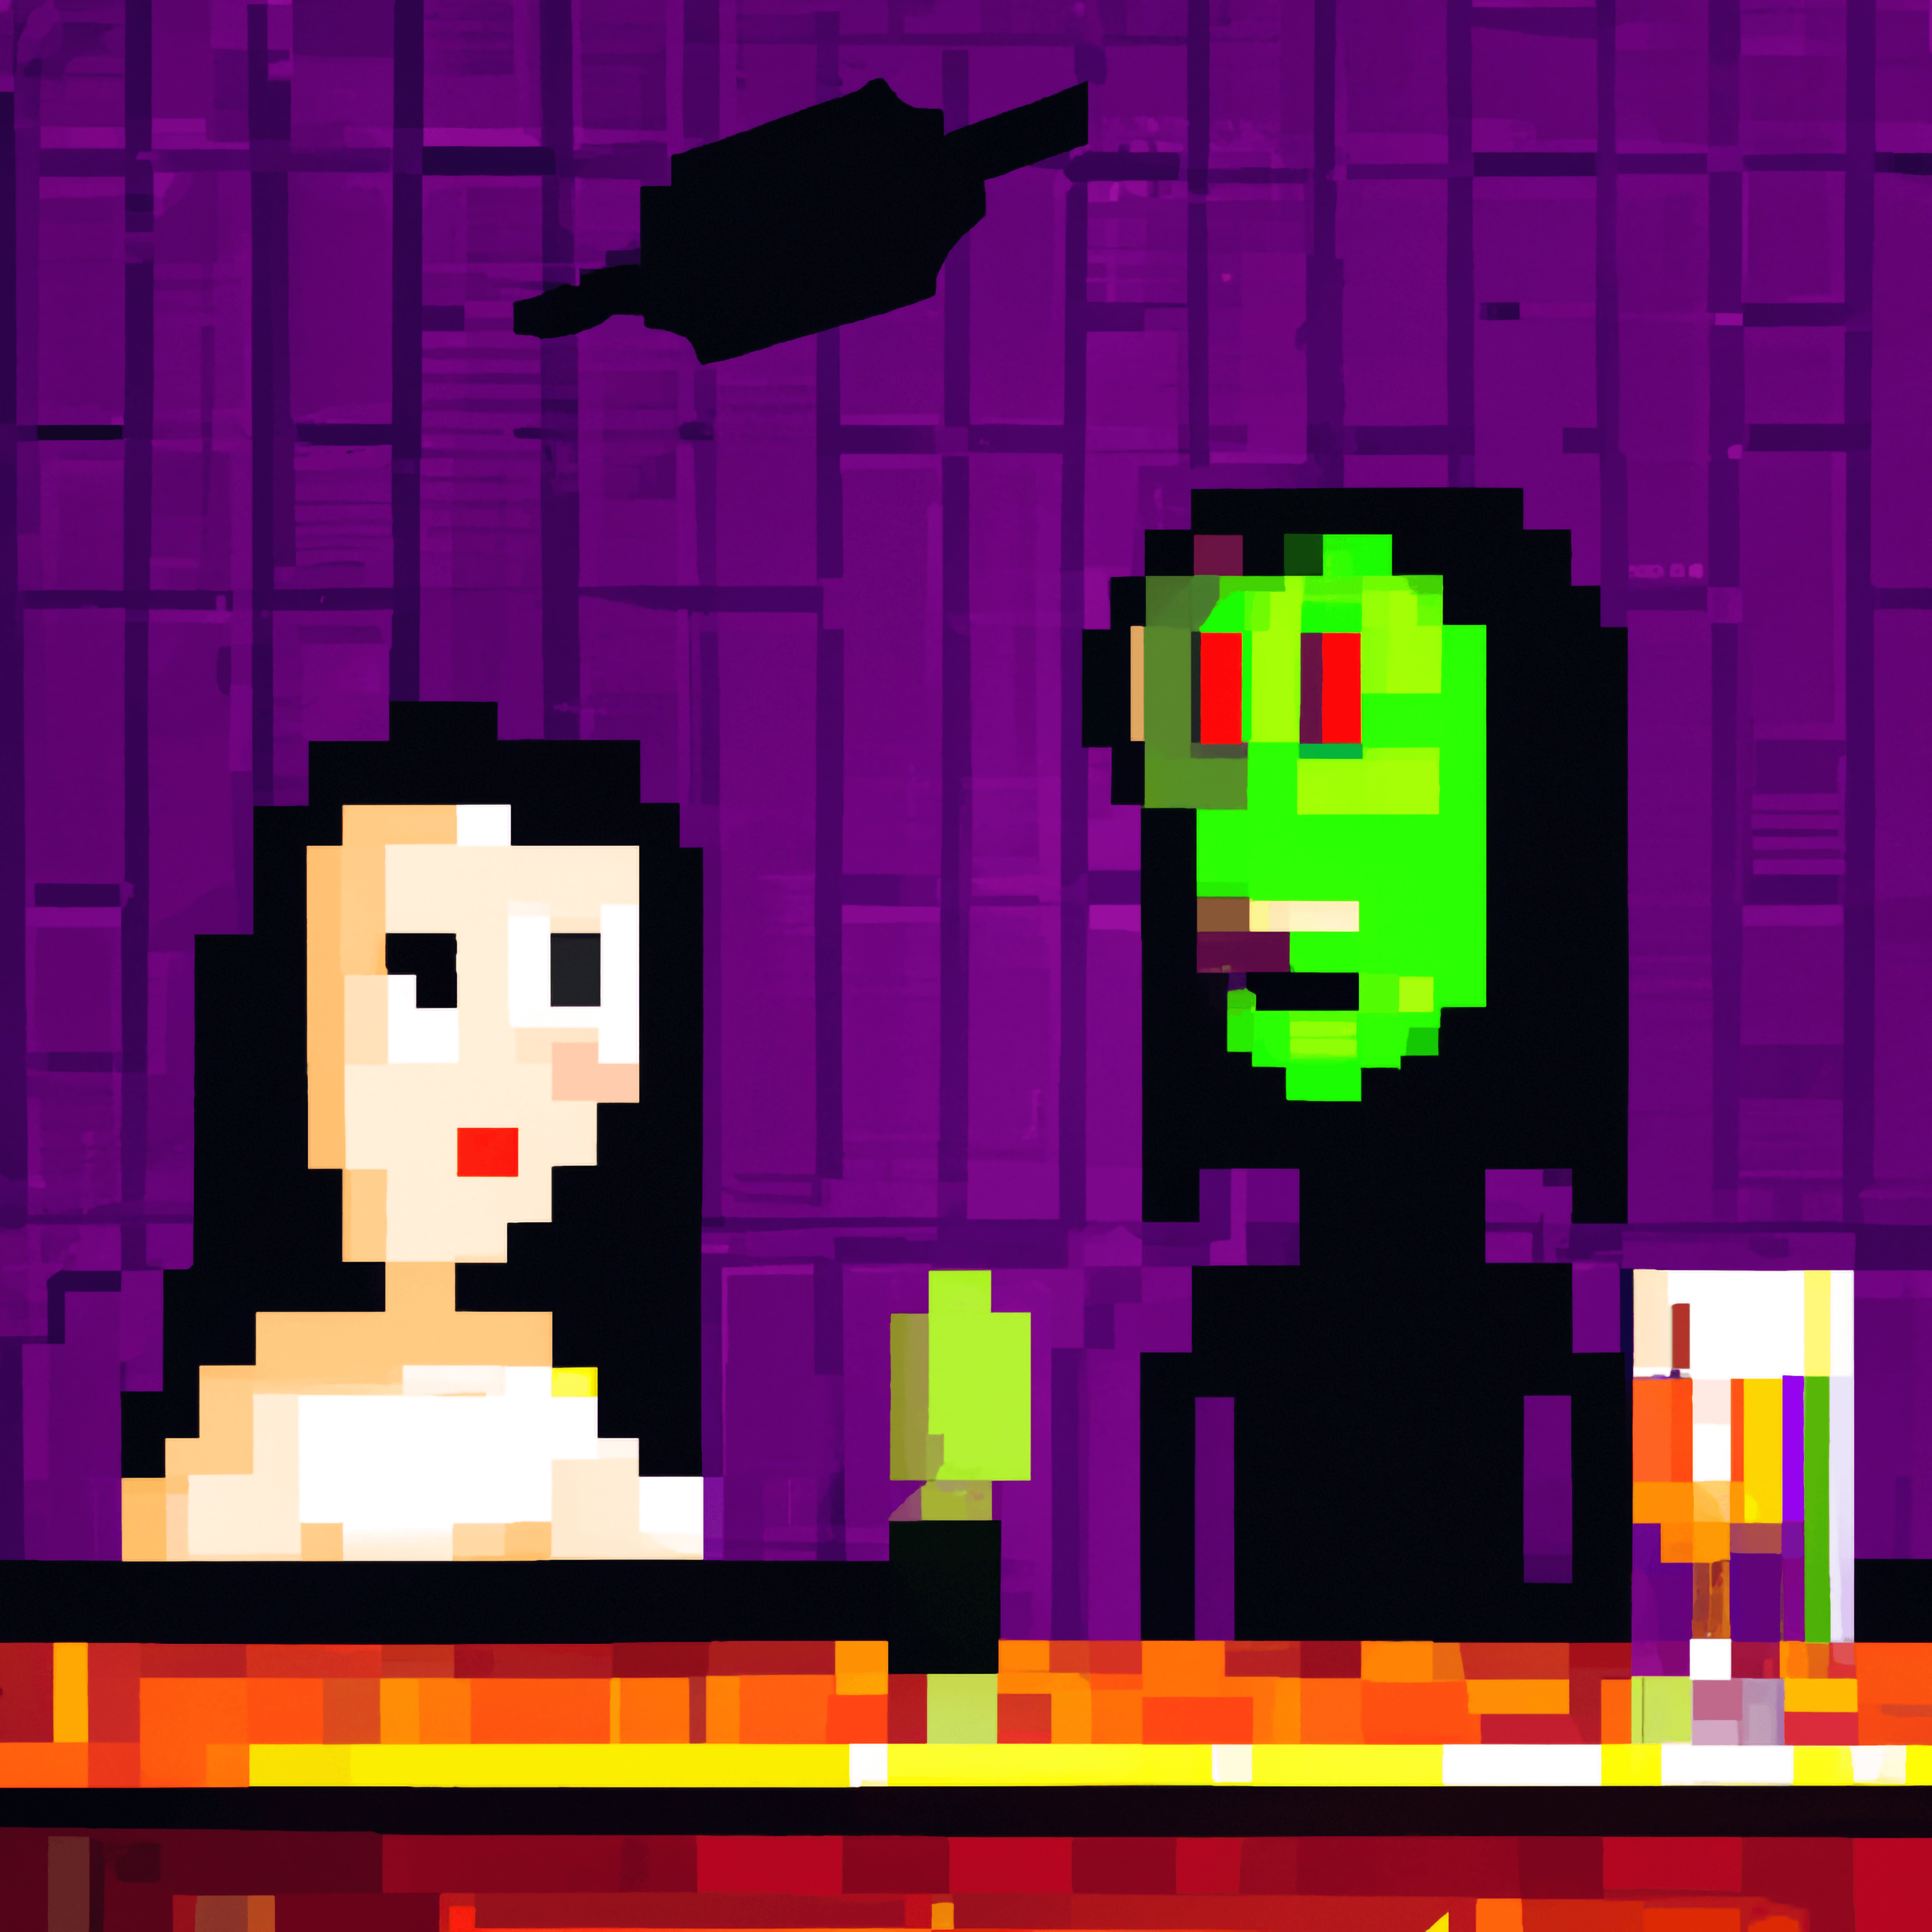 Mona Lisa Meets an Alien in a Bar #7: The Alien in Black